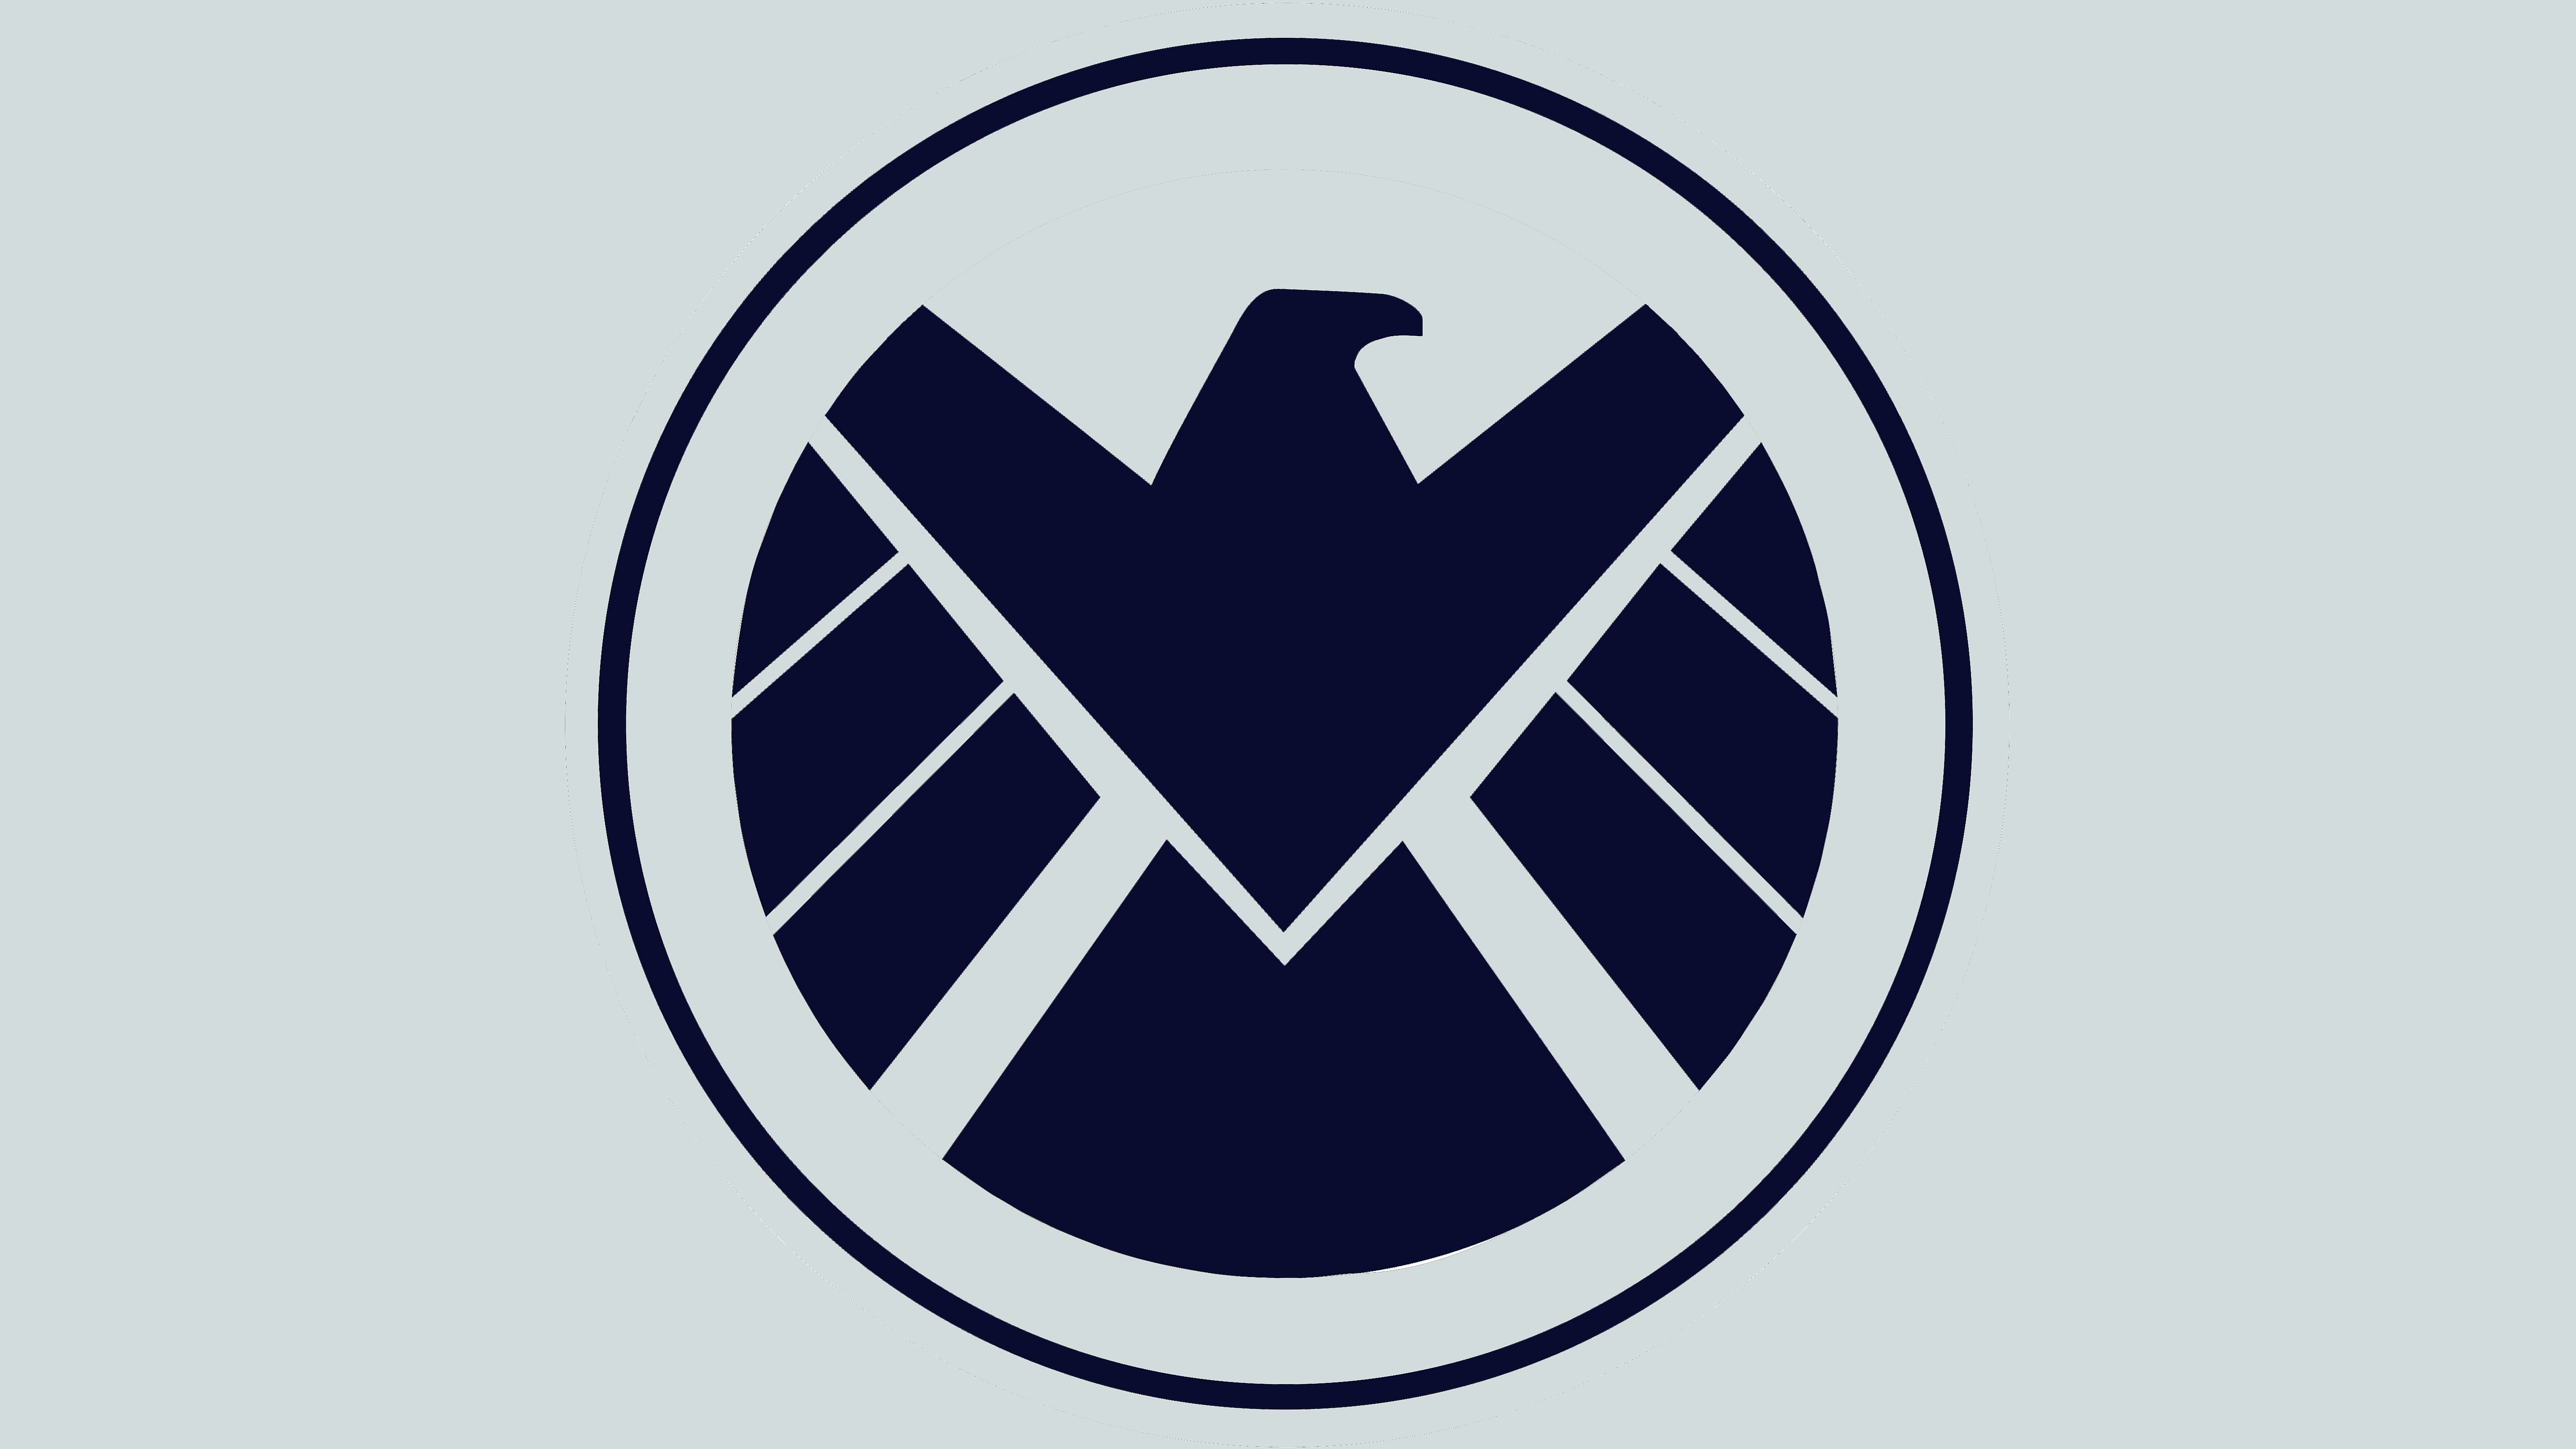 the shield wallpaper,logo,symbol,emblem,font,graphics